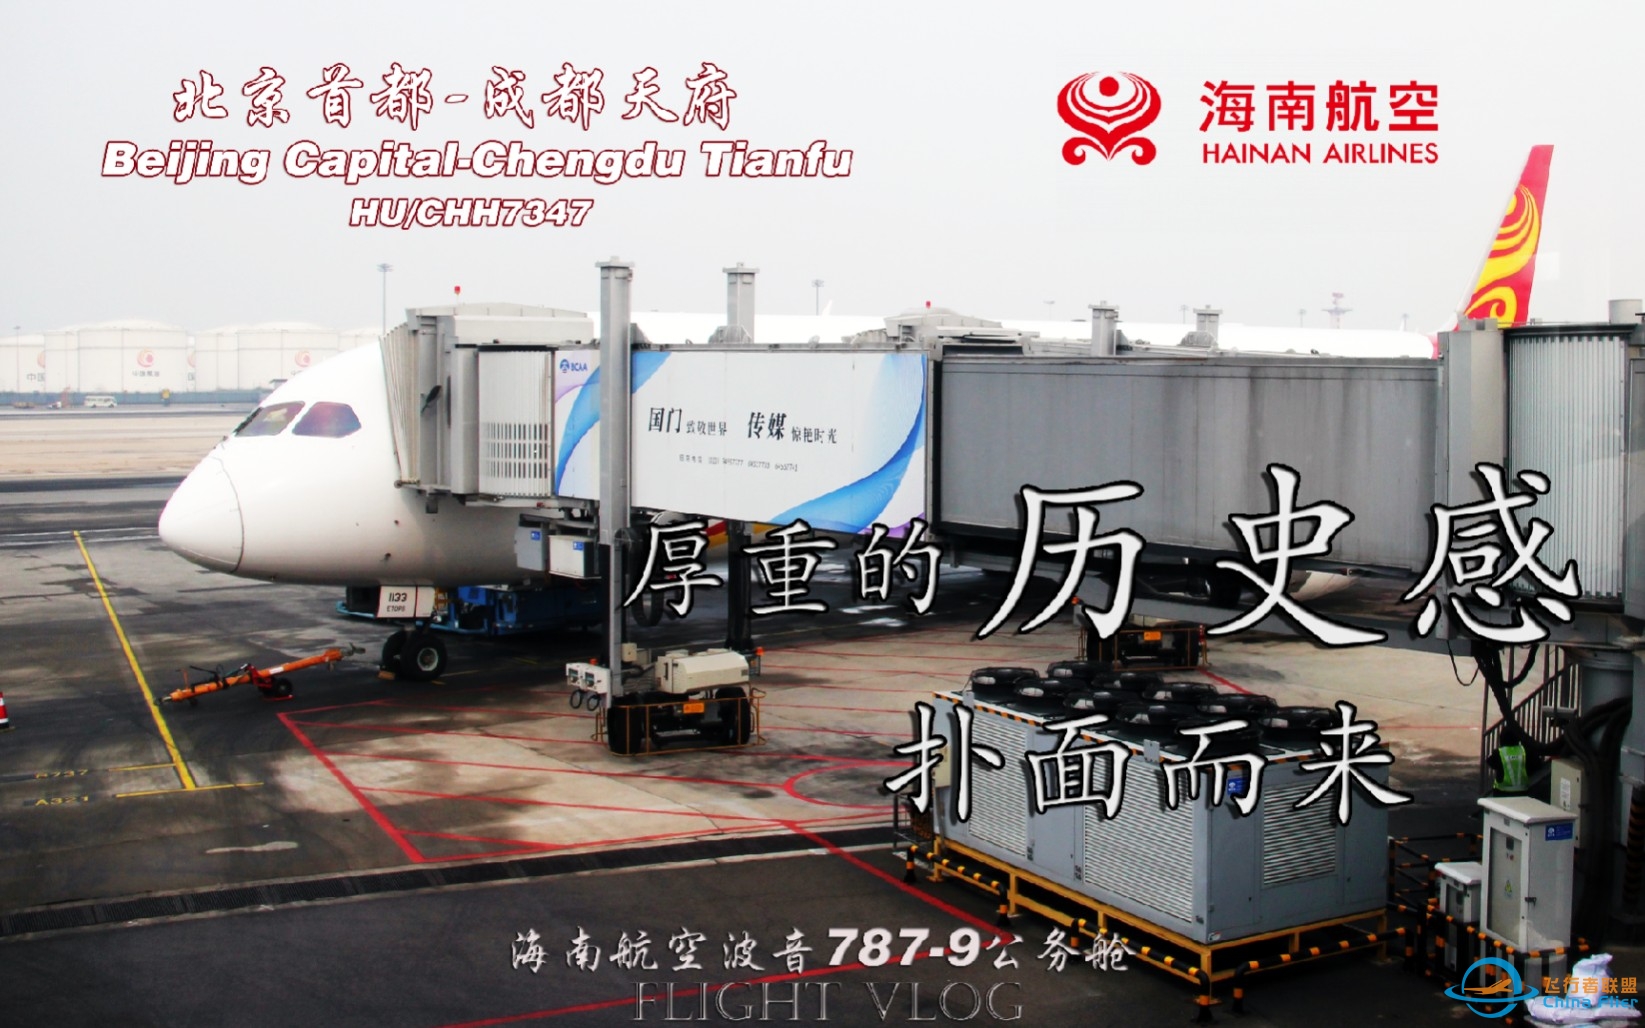 【航空Vlog】 仿佛回到了十年前！北京首都-成都天府 海南航空B787-9公务舱飞行体验-5853 